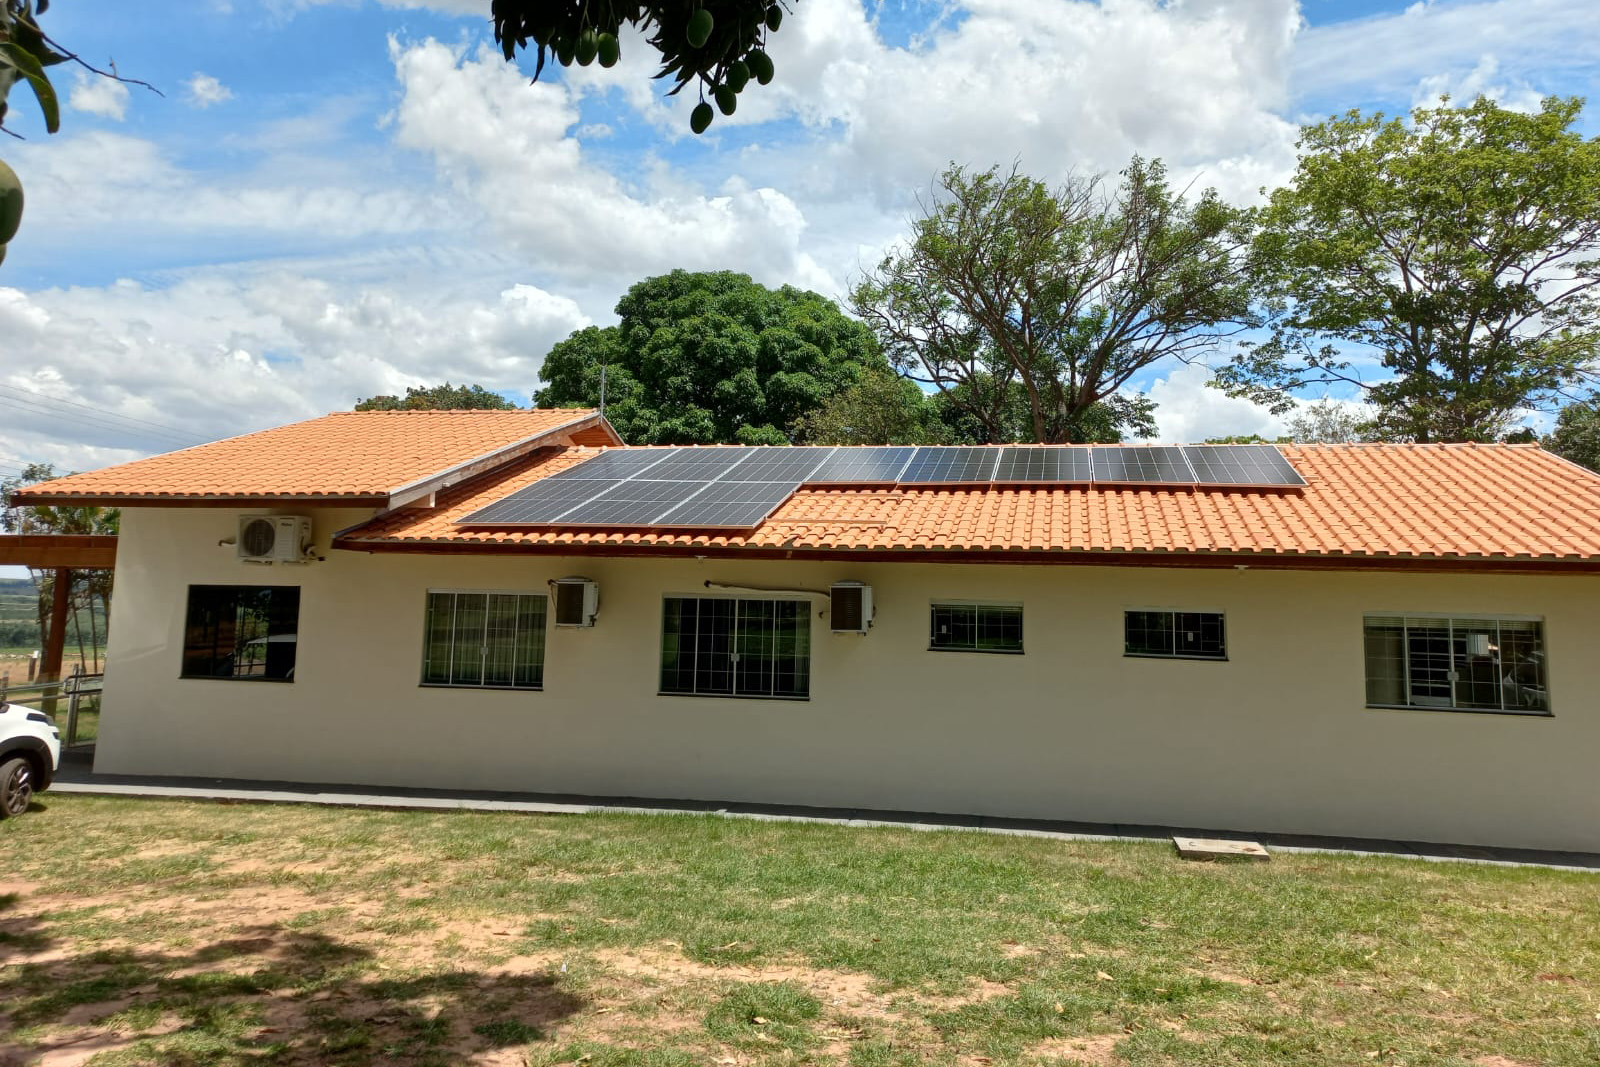 Servidores do IDR-Paraná desenvolvem projeto para geração própria de energia